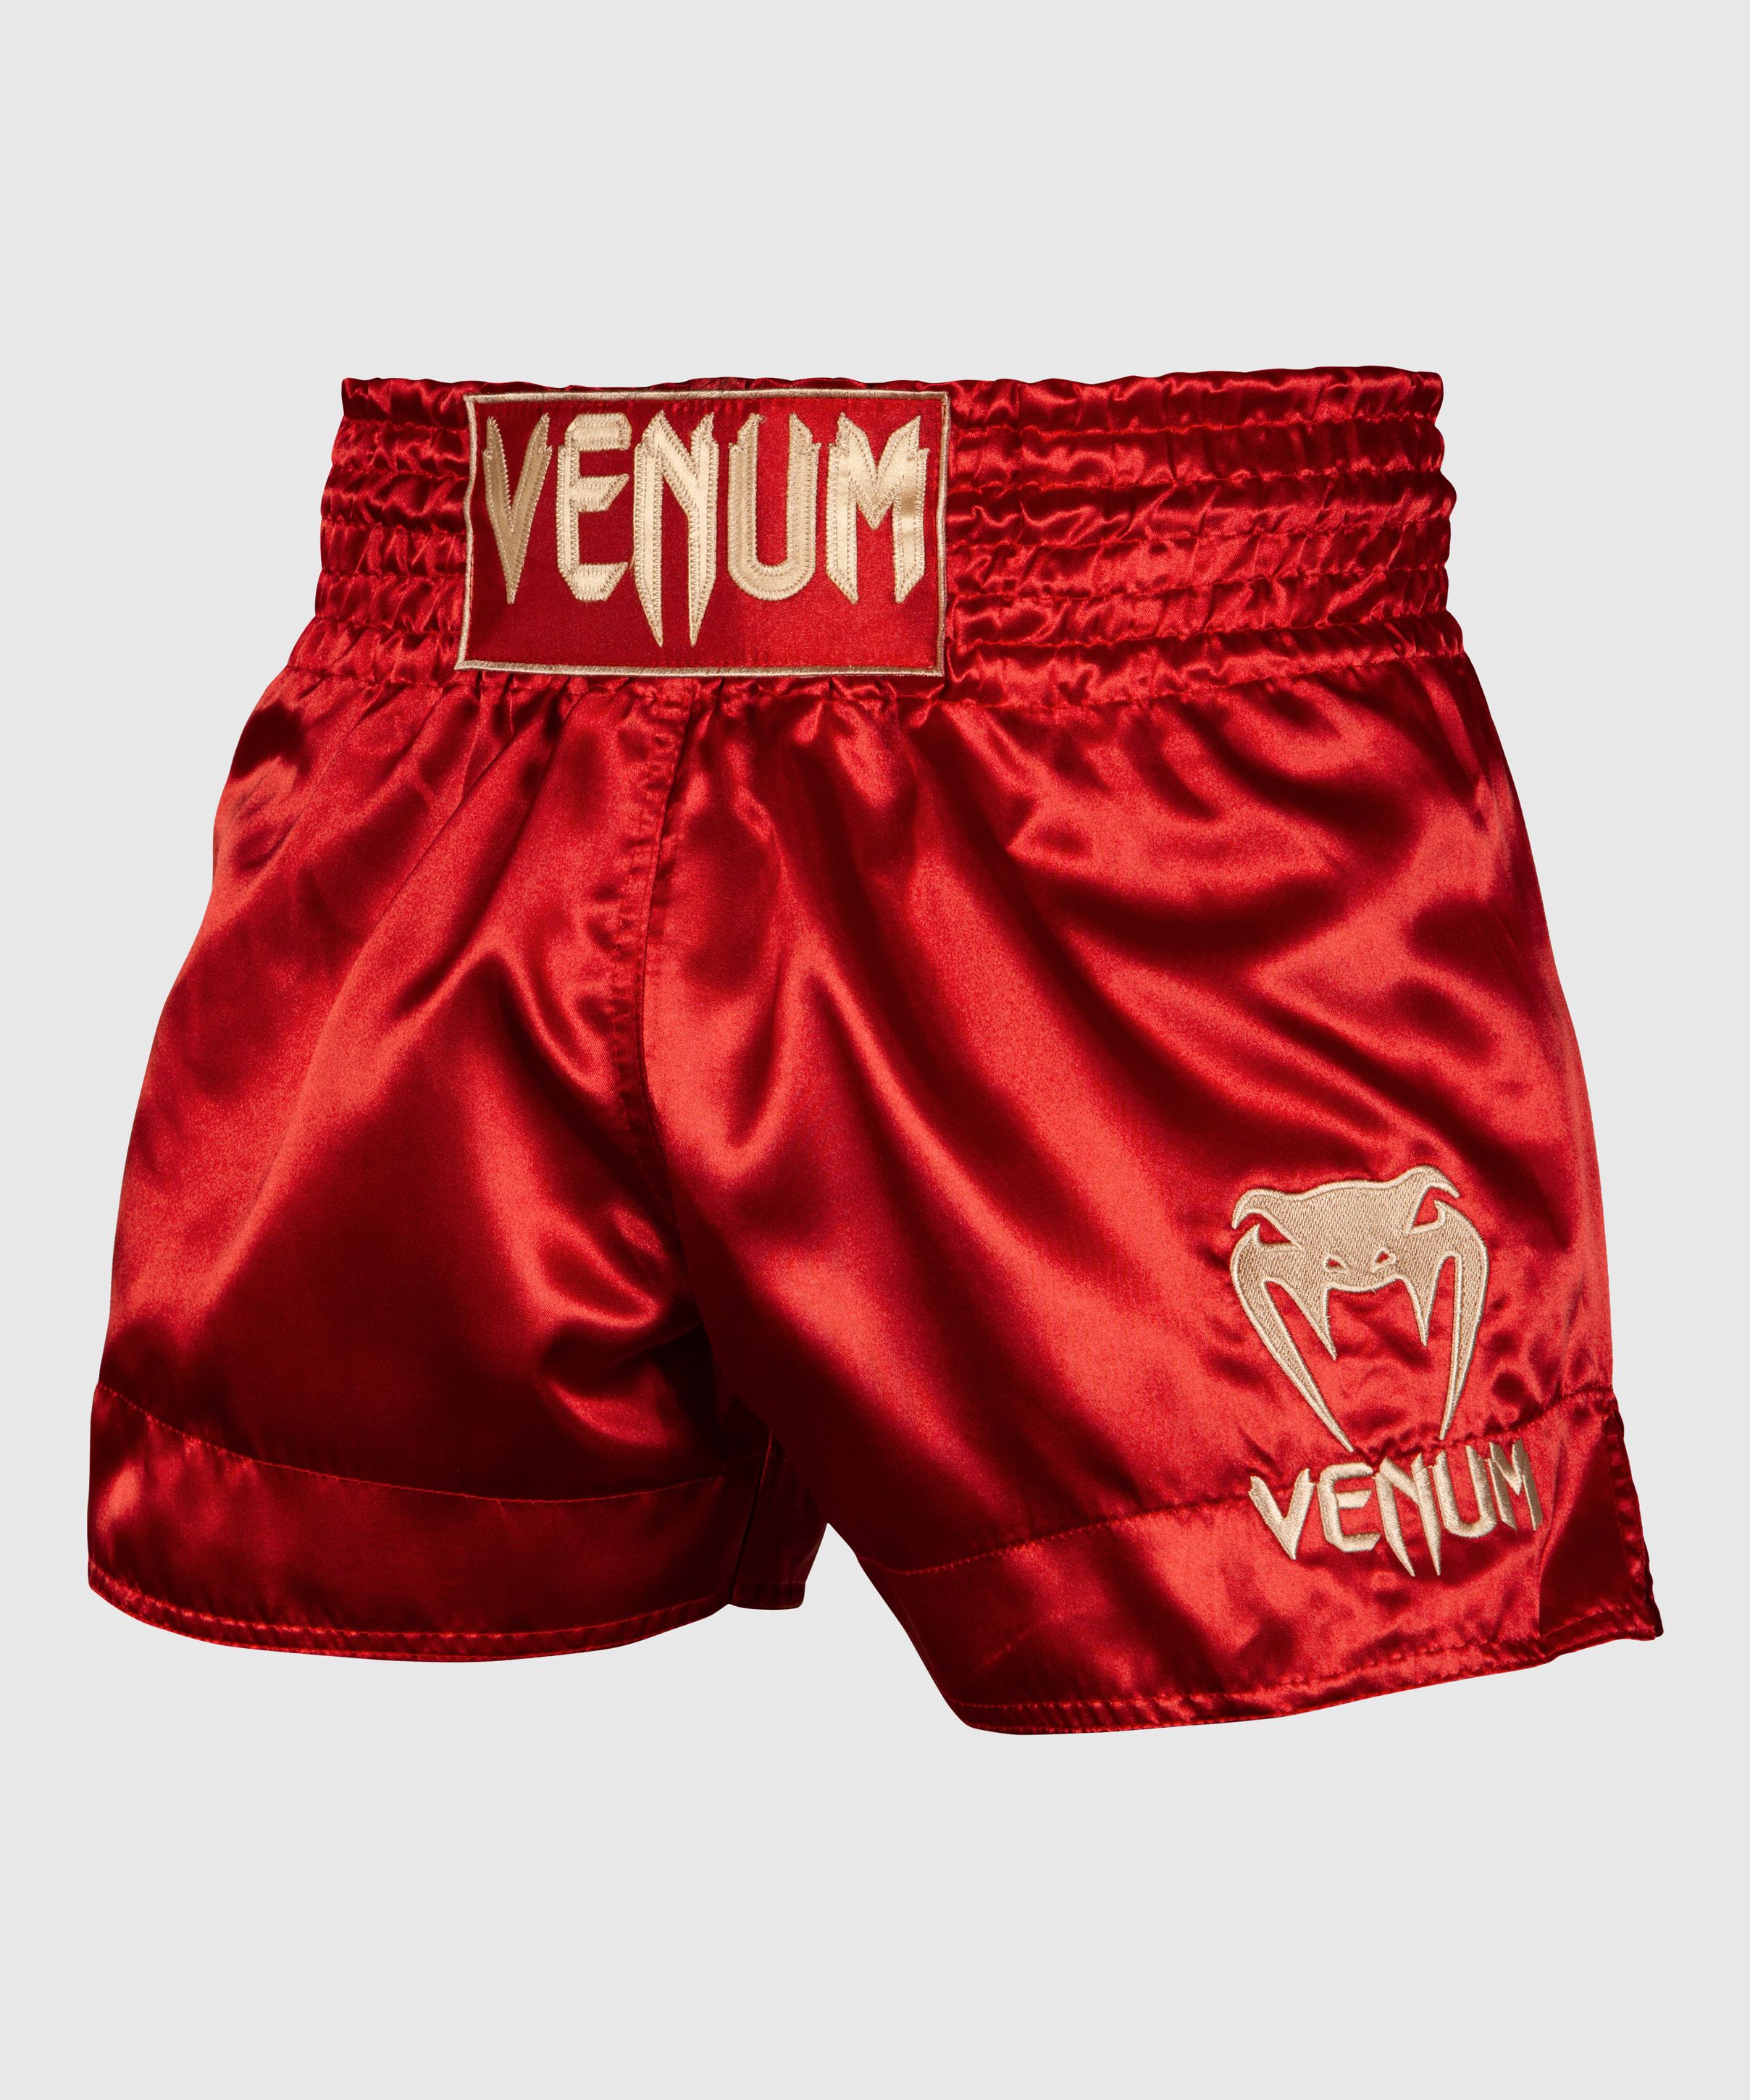 Shorts Muay Thai Venum Classic - Bordeaux/Gold